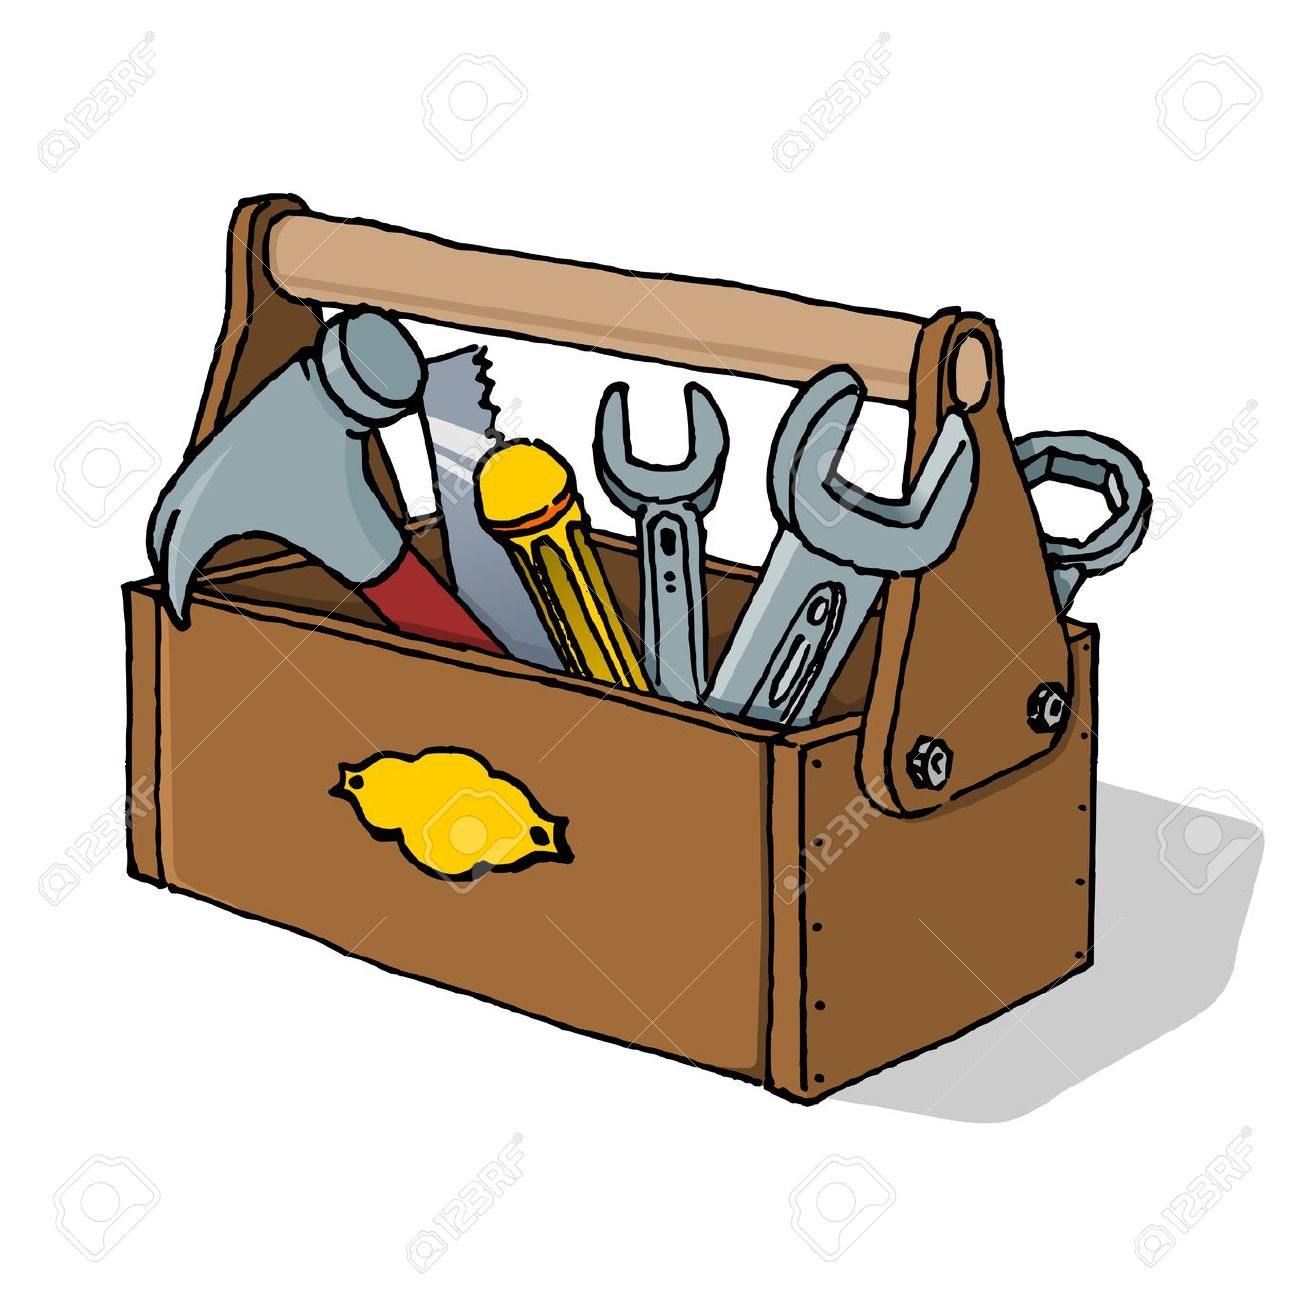 clip art tools toolbox - photo #12